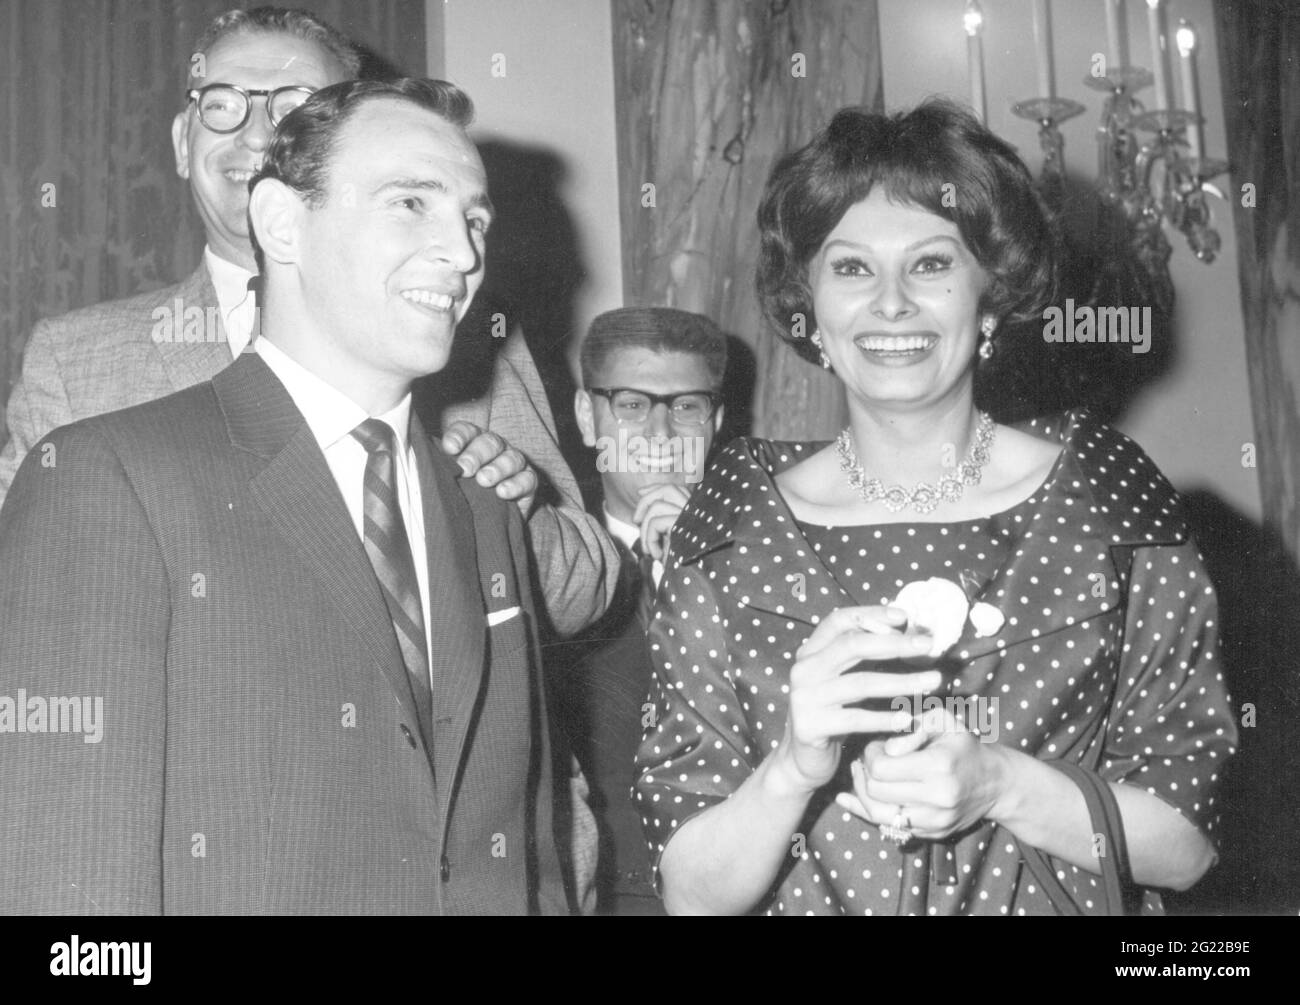 Loren, Sophia, * 20.9.1934, italienische Schauspielerin, halbe Länge, Auf der Pressekonferenz, Anfang der 1960er Jahre, ZUSÄTZLICHE-RIGHTS-CLEARANCE-INFO-NOT-AVAILABLE Stockfoto